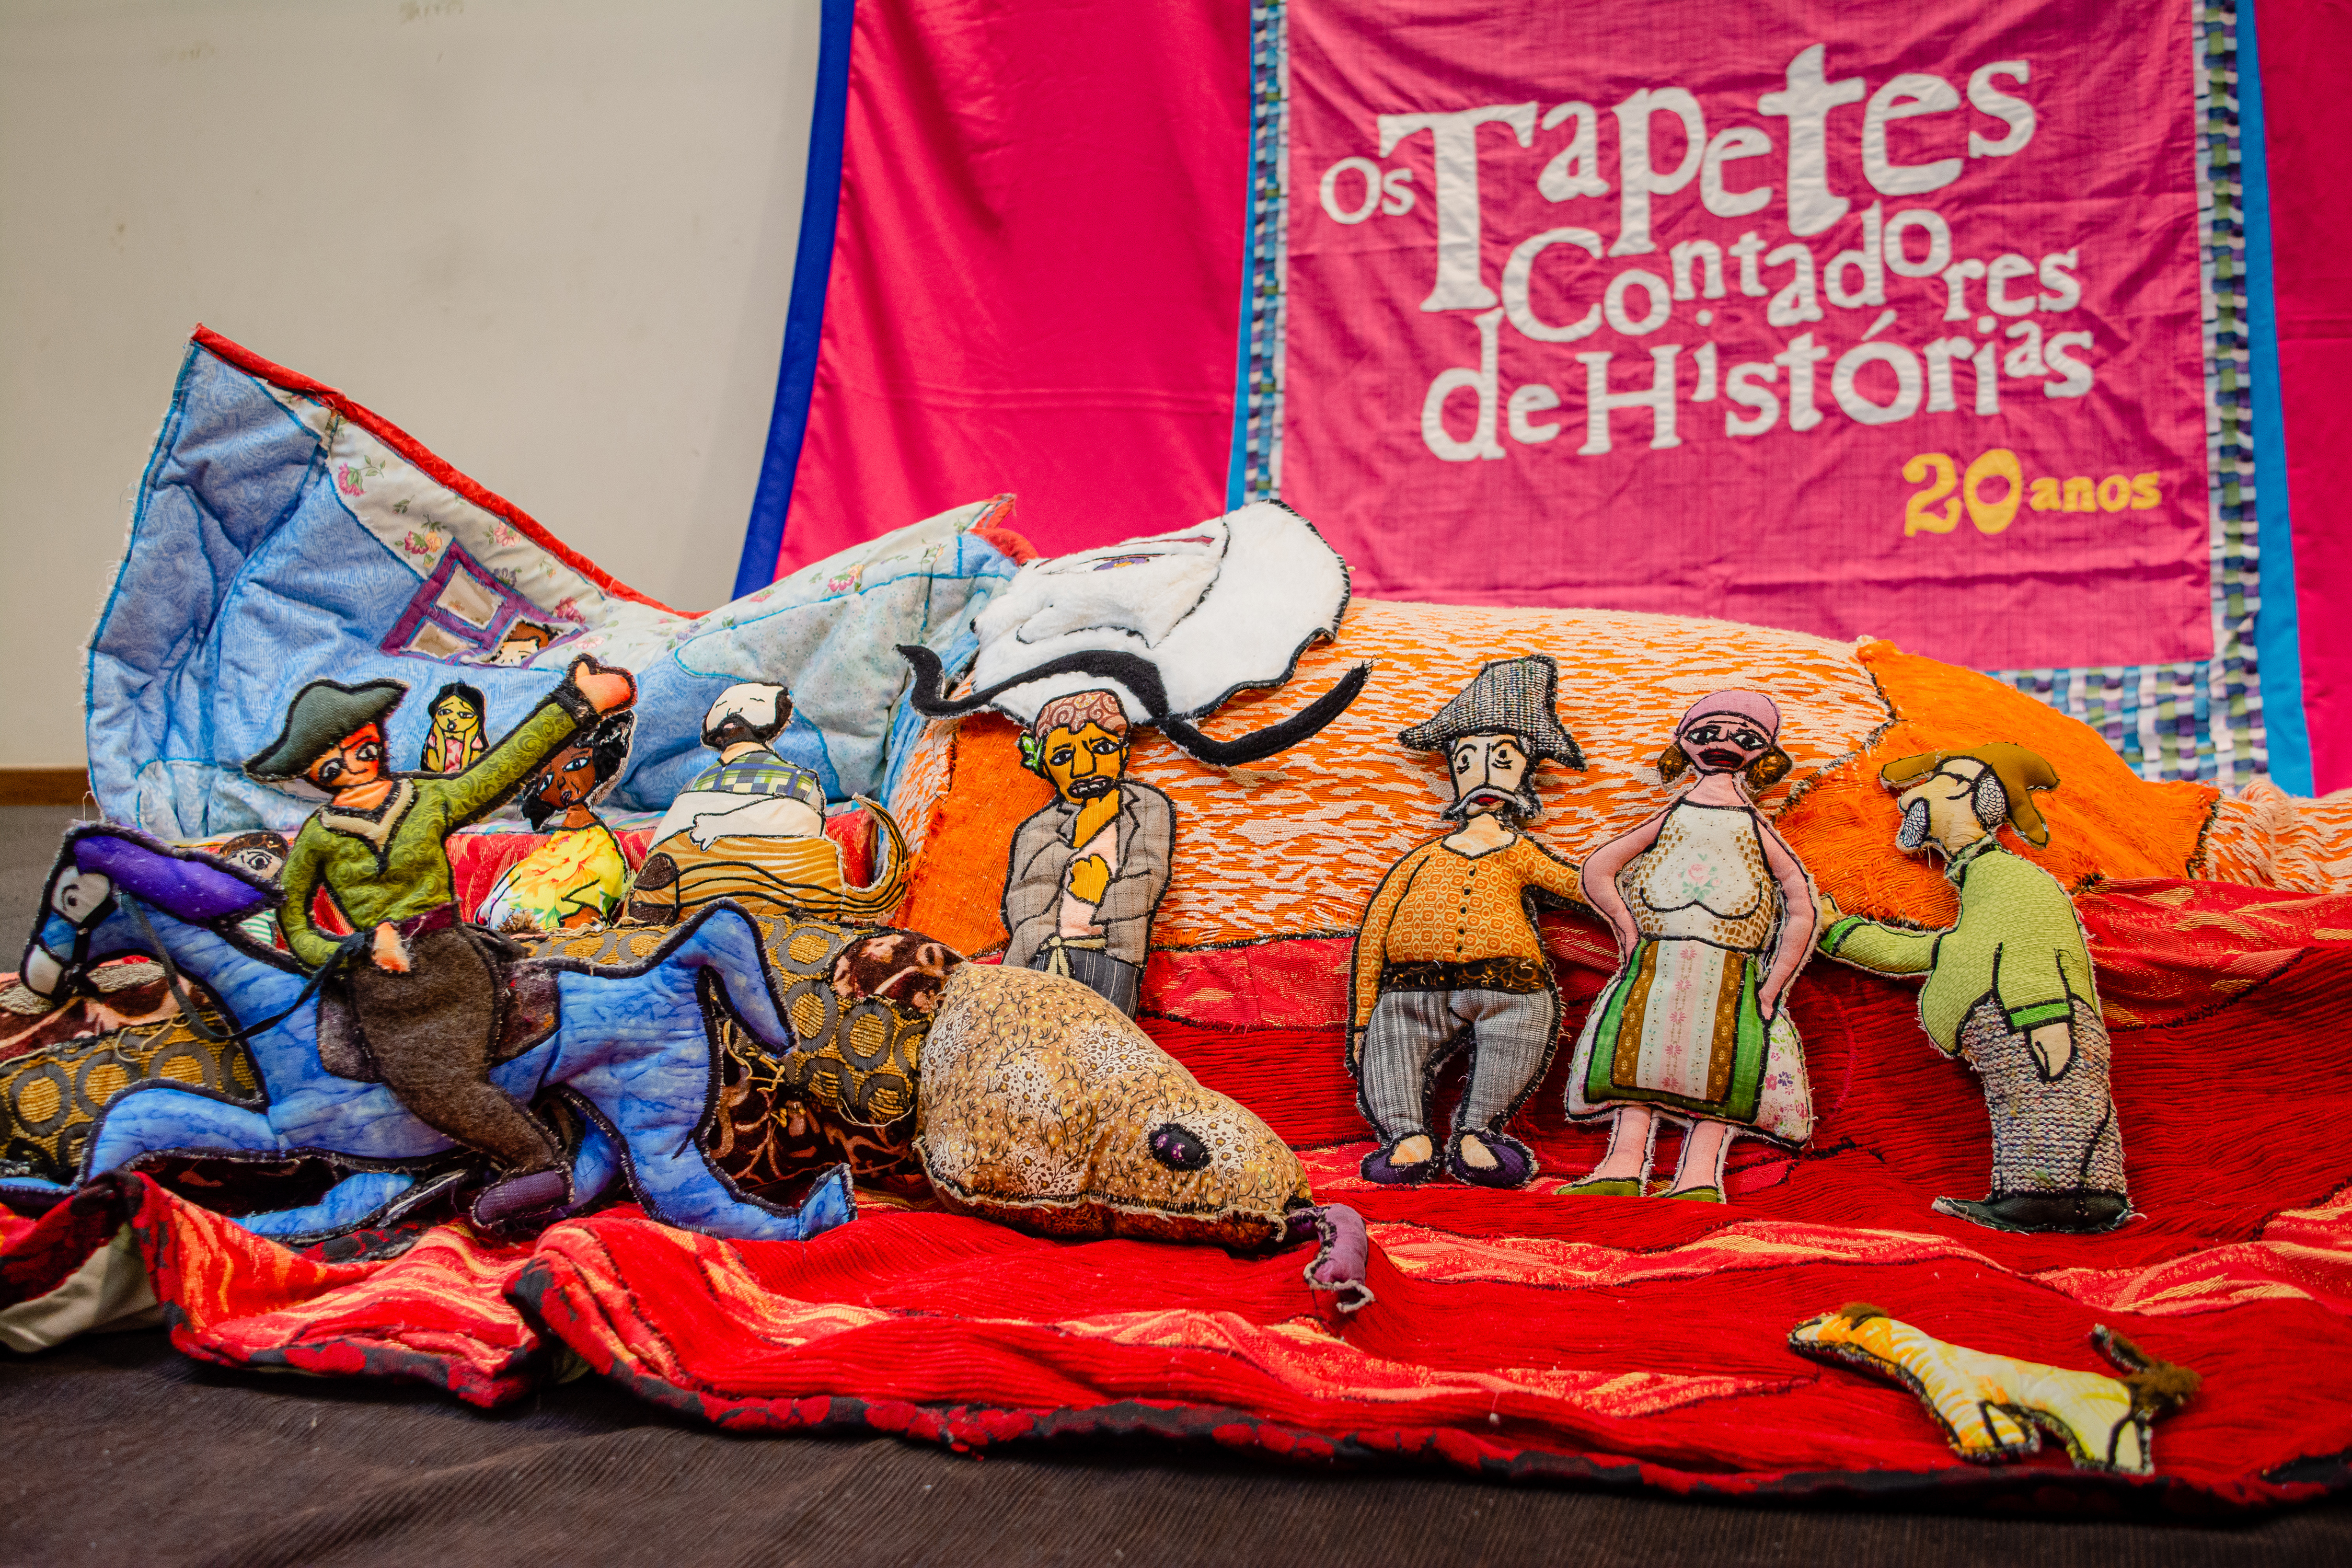 Os Tapetes Contadores de Histórias celebram 24 anos em mostra gratuita no teatro da CAIXA